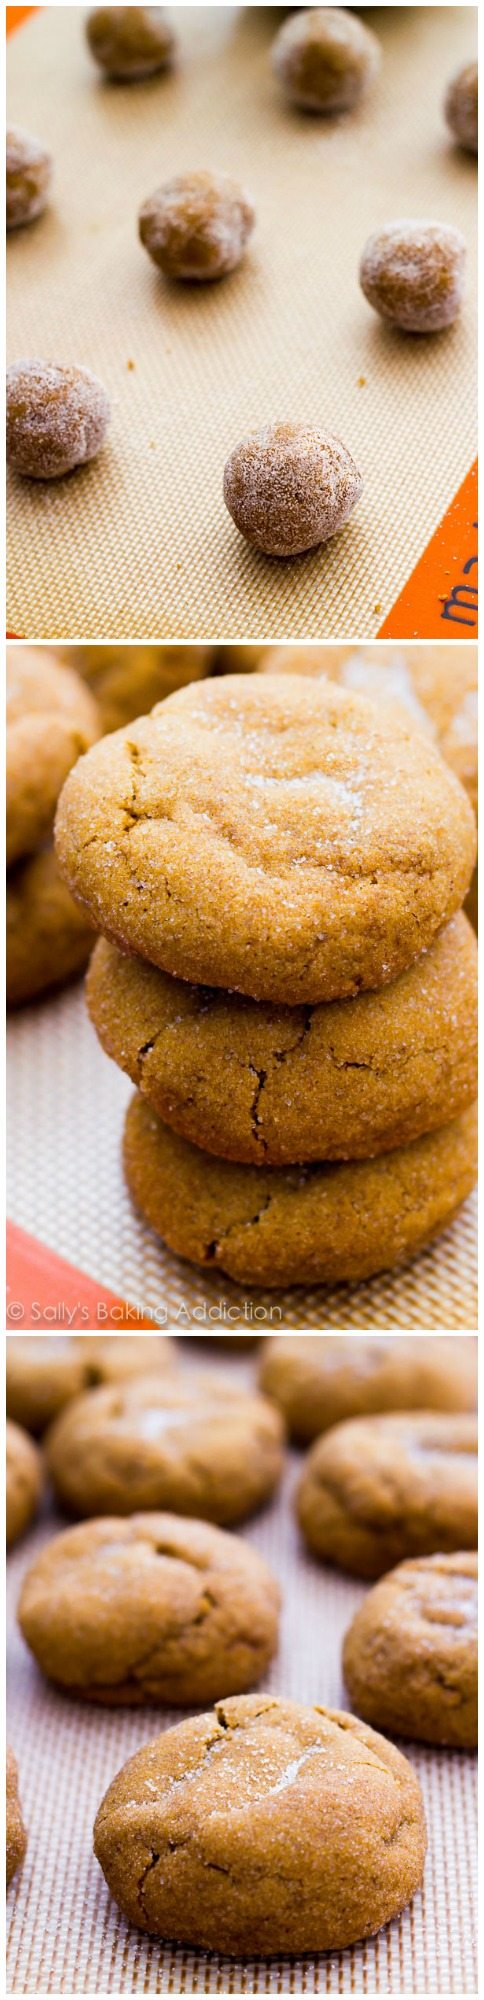 Biscuits à la mélasse molle - ce sont les biscuits de mélasse les plus doux! Puffy, moelleux, et complètement fondre dans votre bouche.